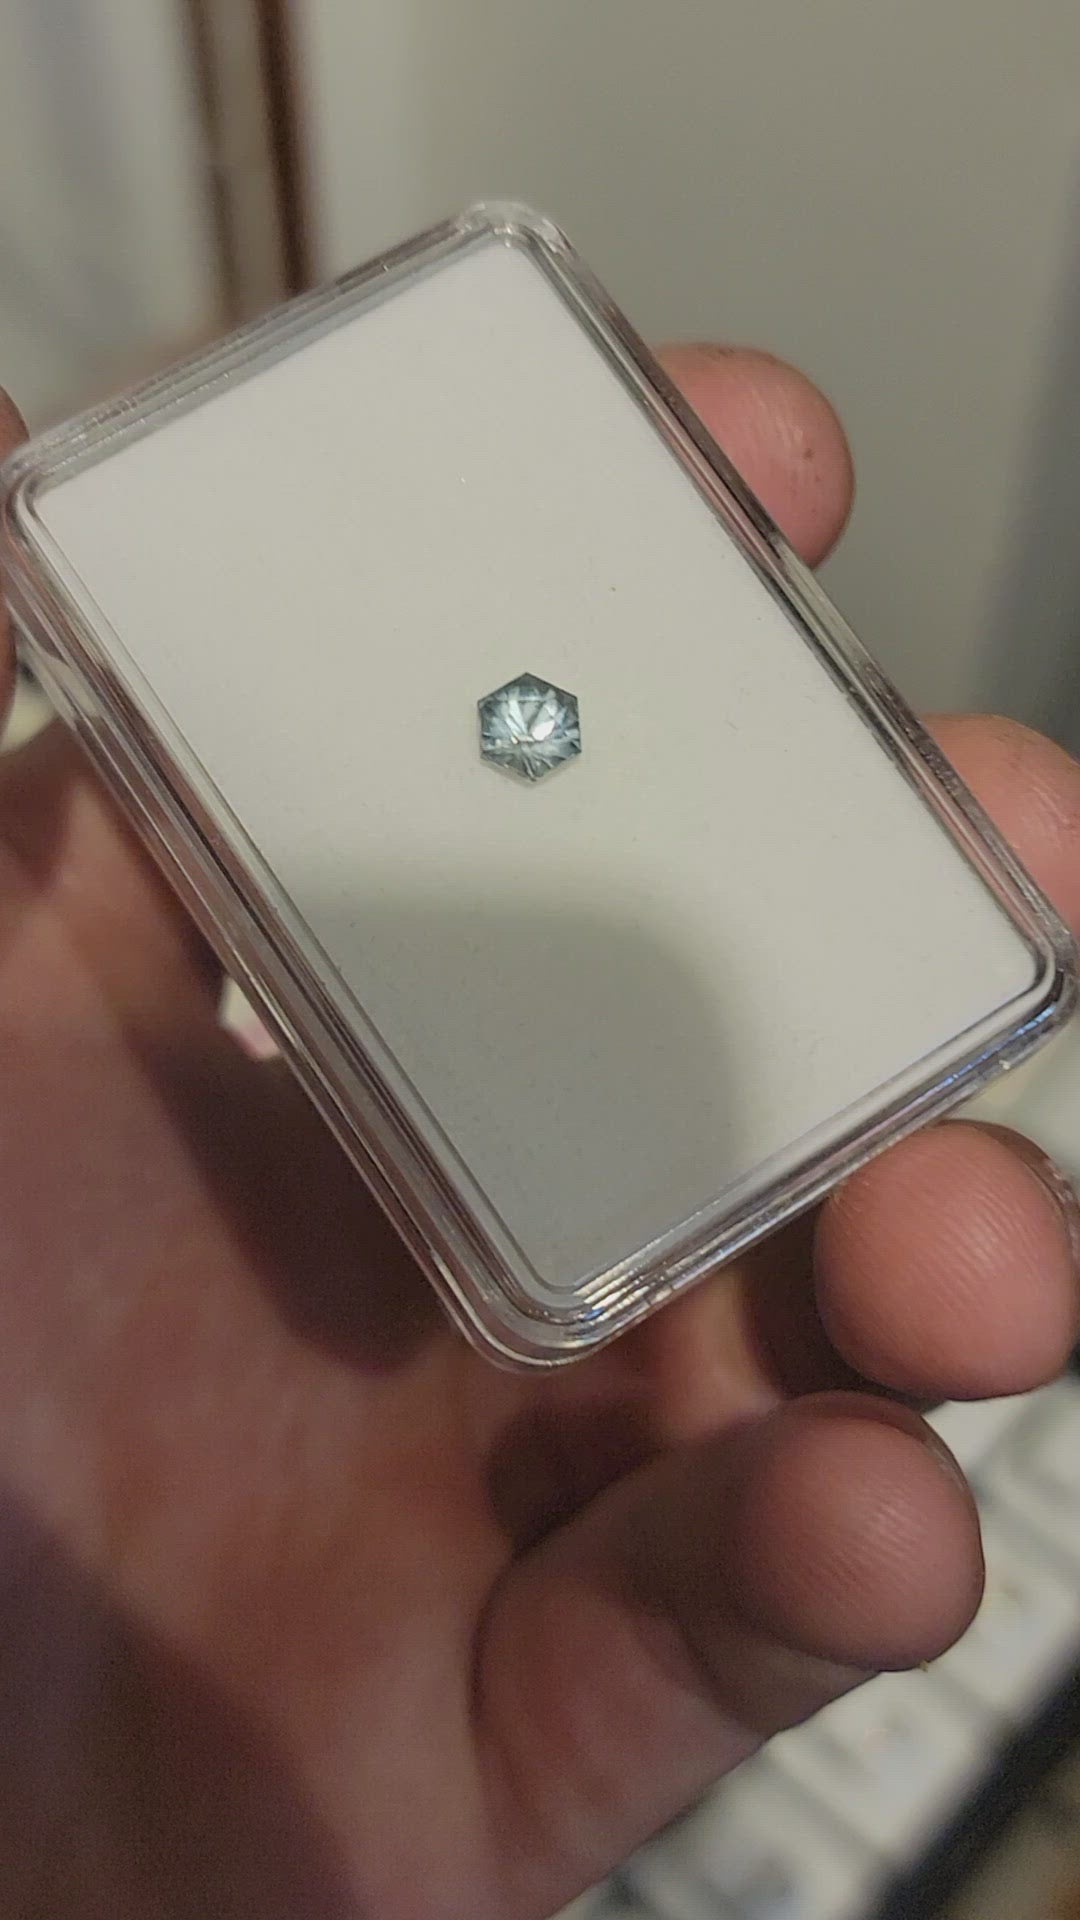 Montana Sapphire 1.24 carat Hexagone - Coupe de précision, 6.2x5.4mm